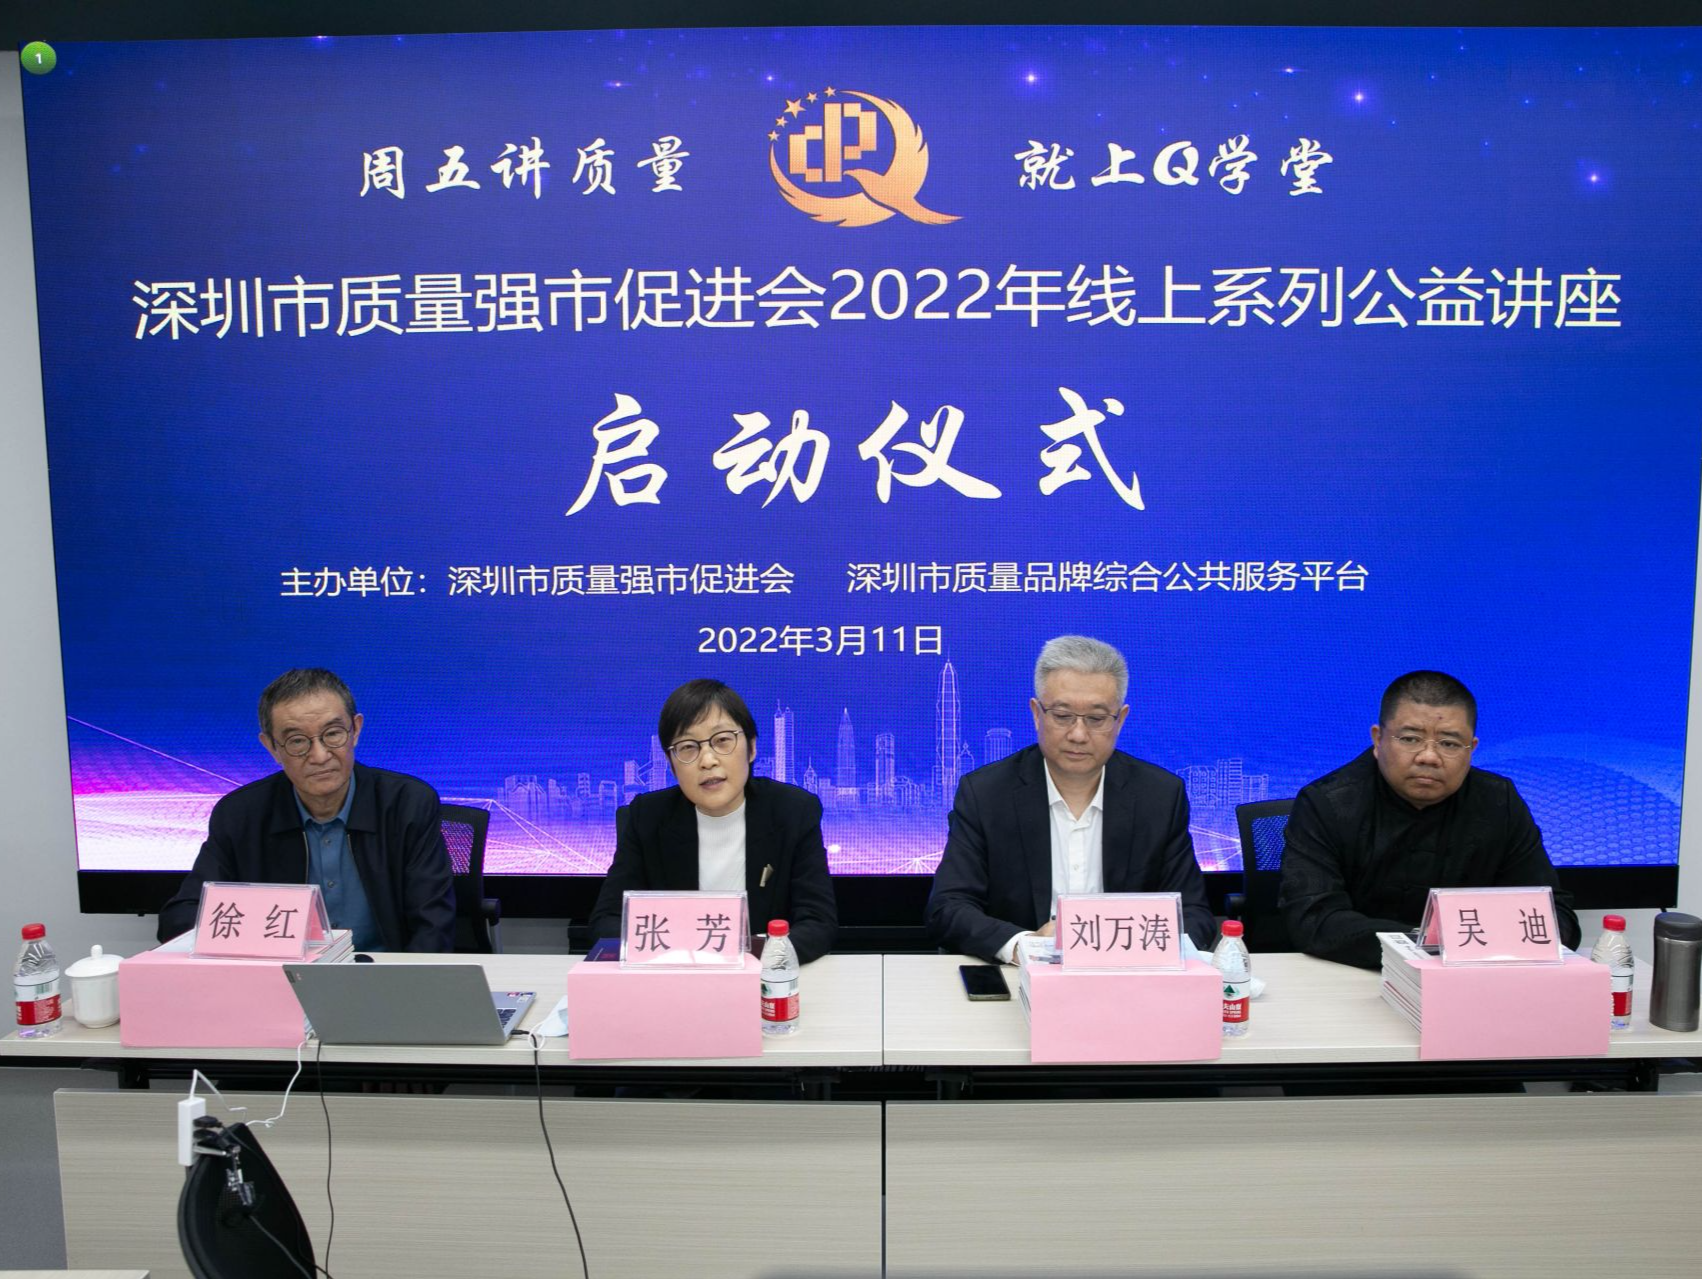 深圳质量强市促进会2022年线上系列公益讲座开讲 